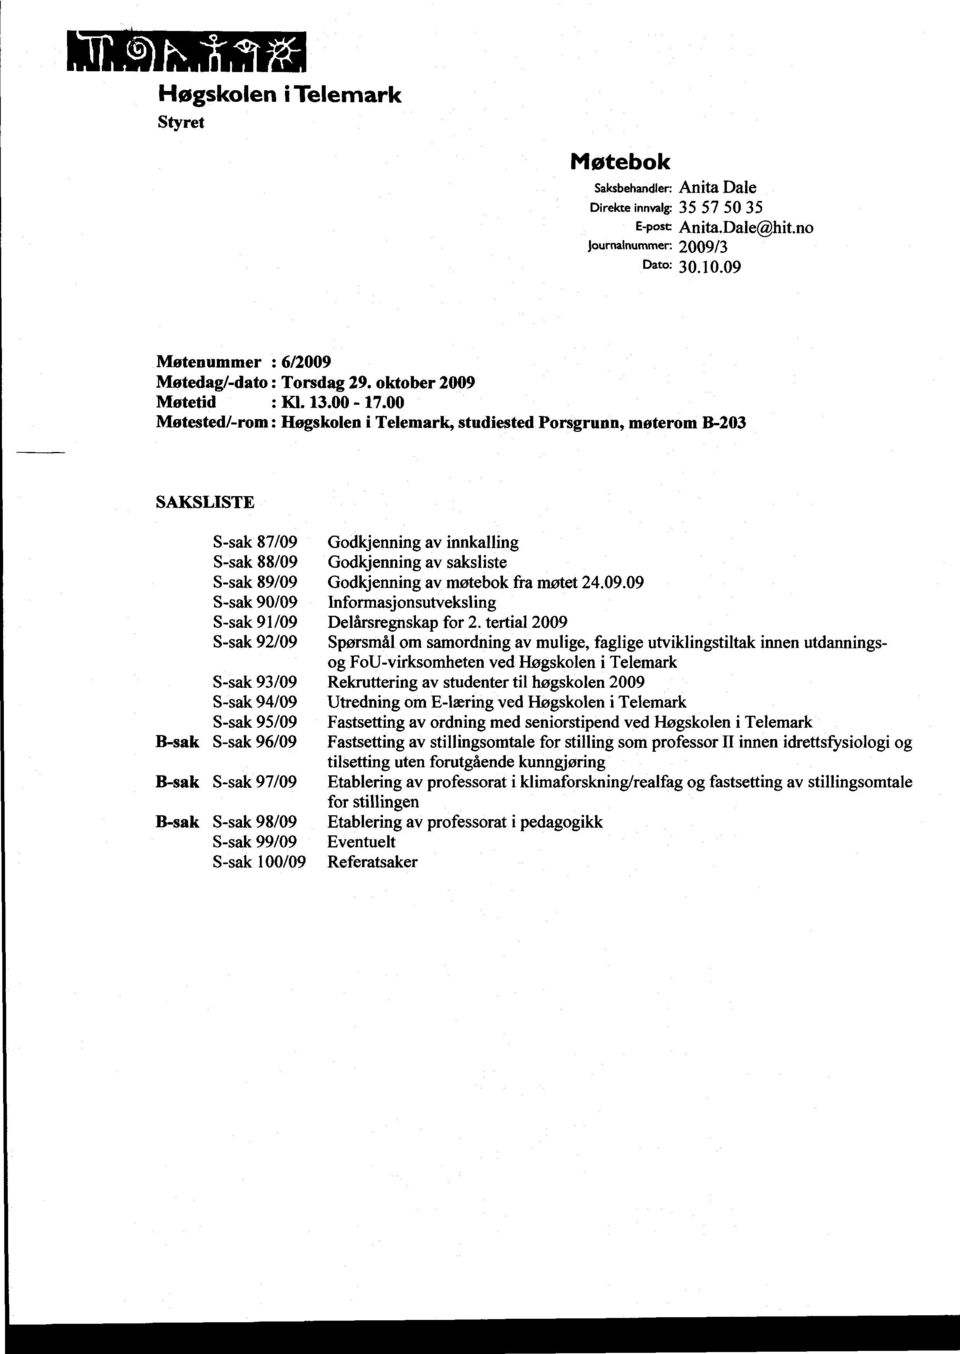 00 Møtested/-rom: Høgskolen i Telemark, studiested Porsgrunn, møterom B-203 SAKSLISTE S-sak 87/09 S-sak 88/09 S-sak 89/09 S-sak 90109 S-sak 91/09 S-sak 92/09 S-sak 93/09 S-sak 94/09 S-sak 95/09 B-sak